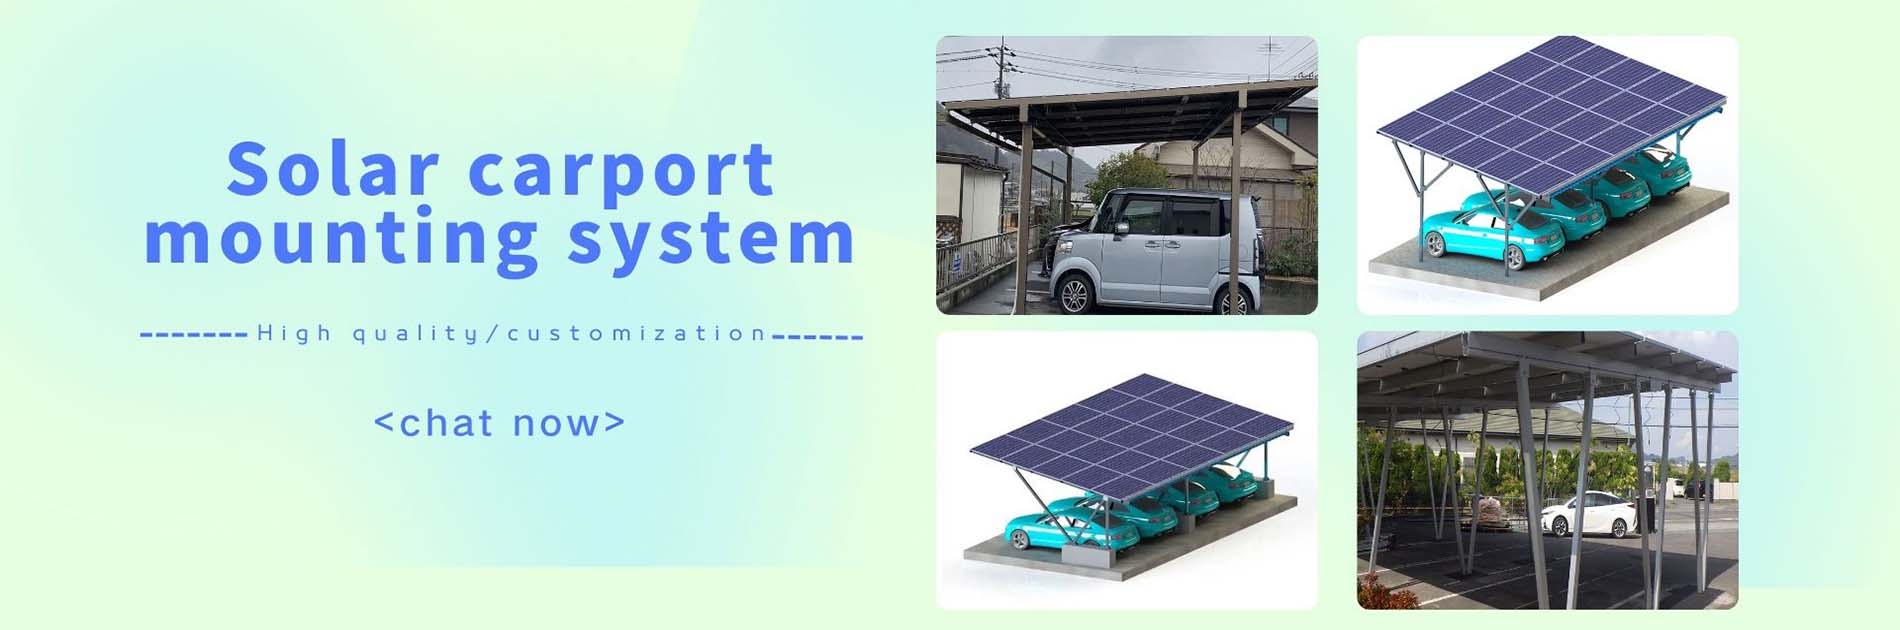 Солнечная система крепления навеса для автомобиля1